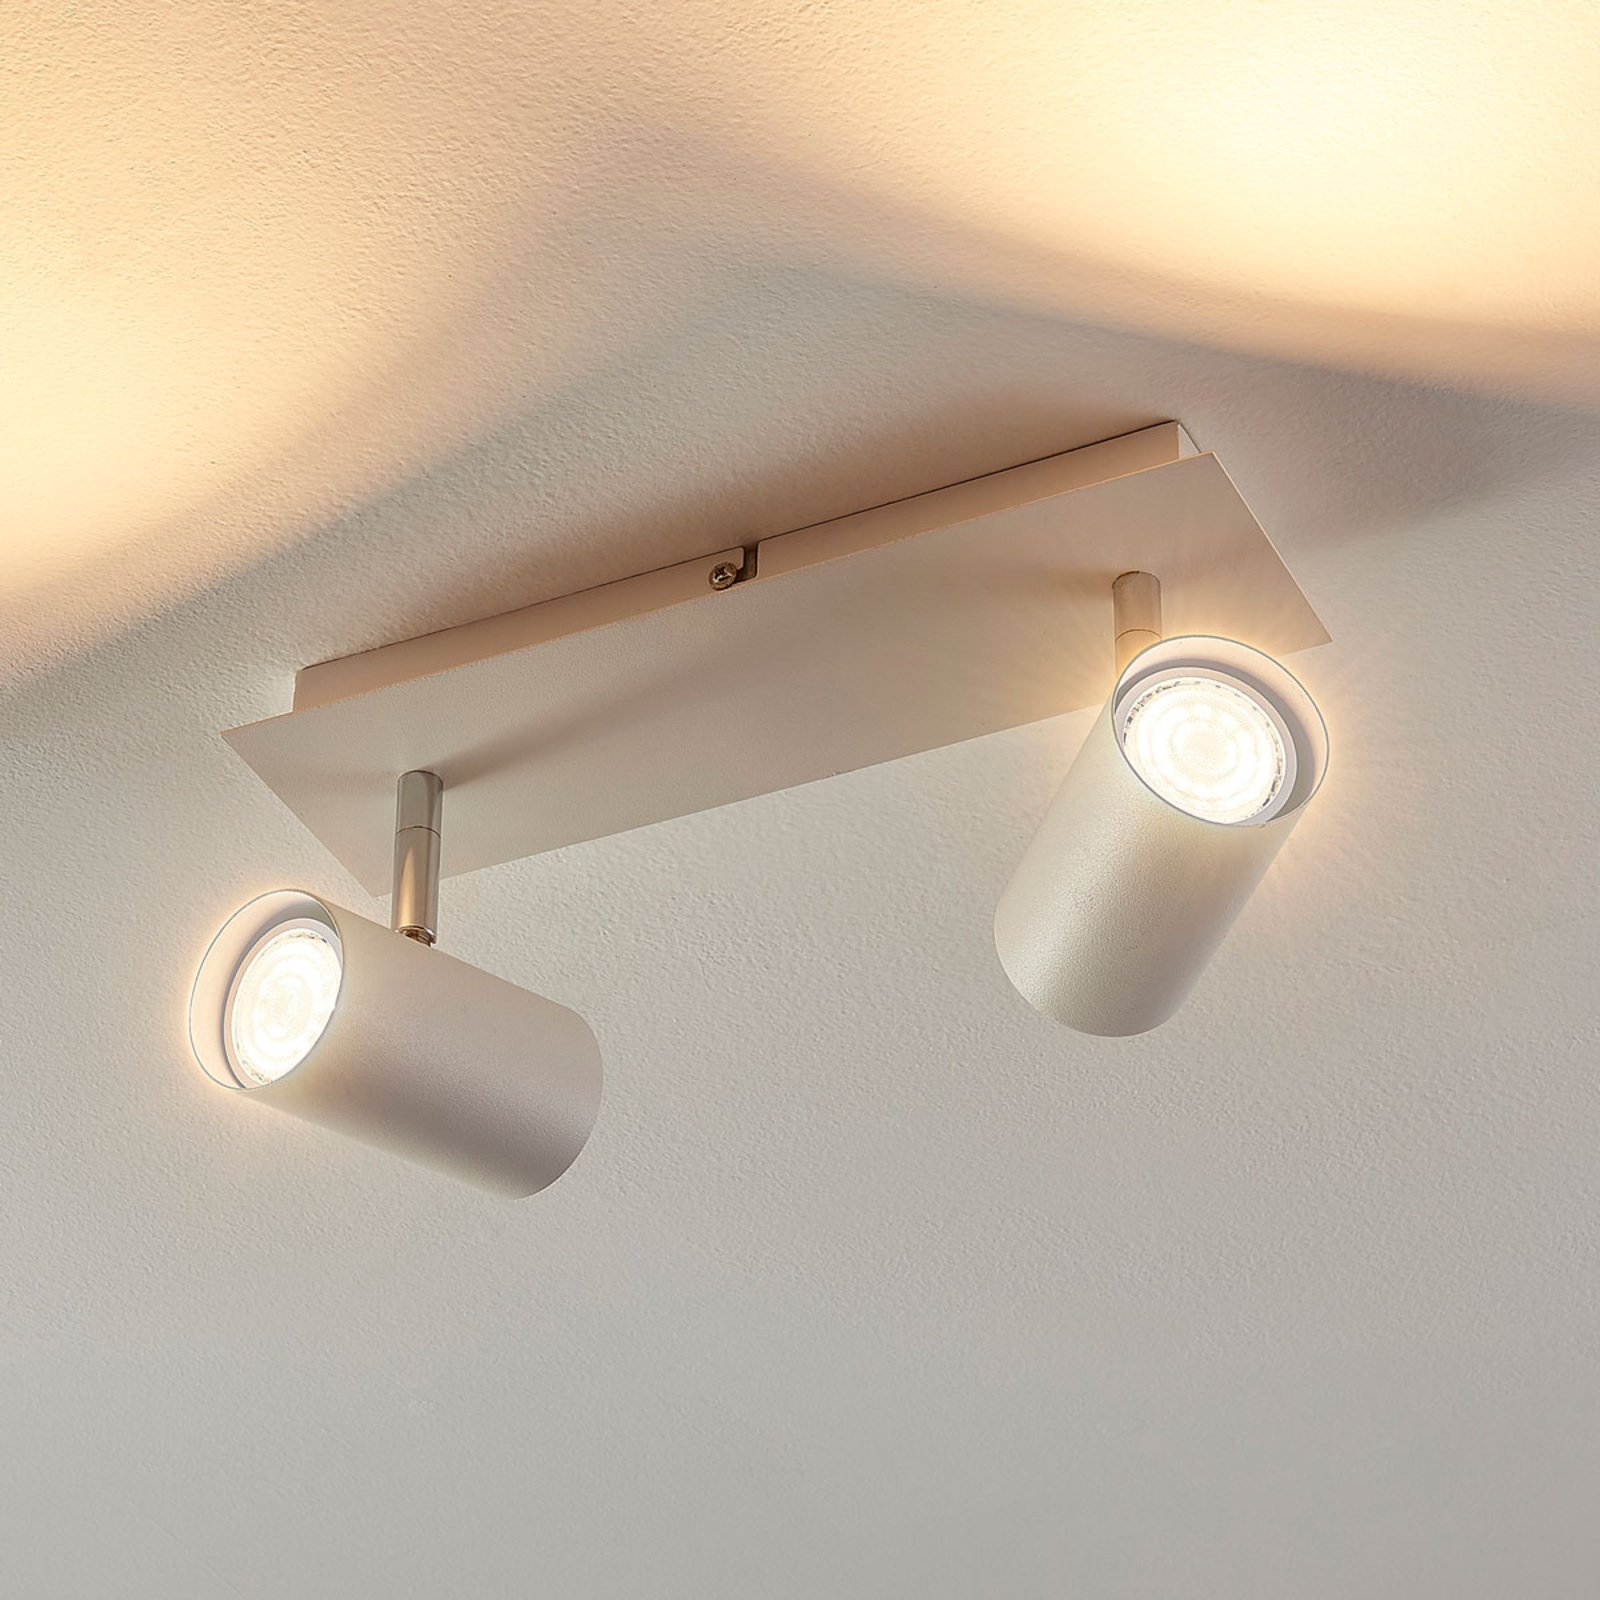 Iluk - LED bodovka 2 zdroje, na stěnu a strop